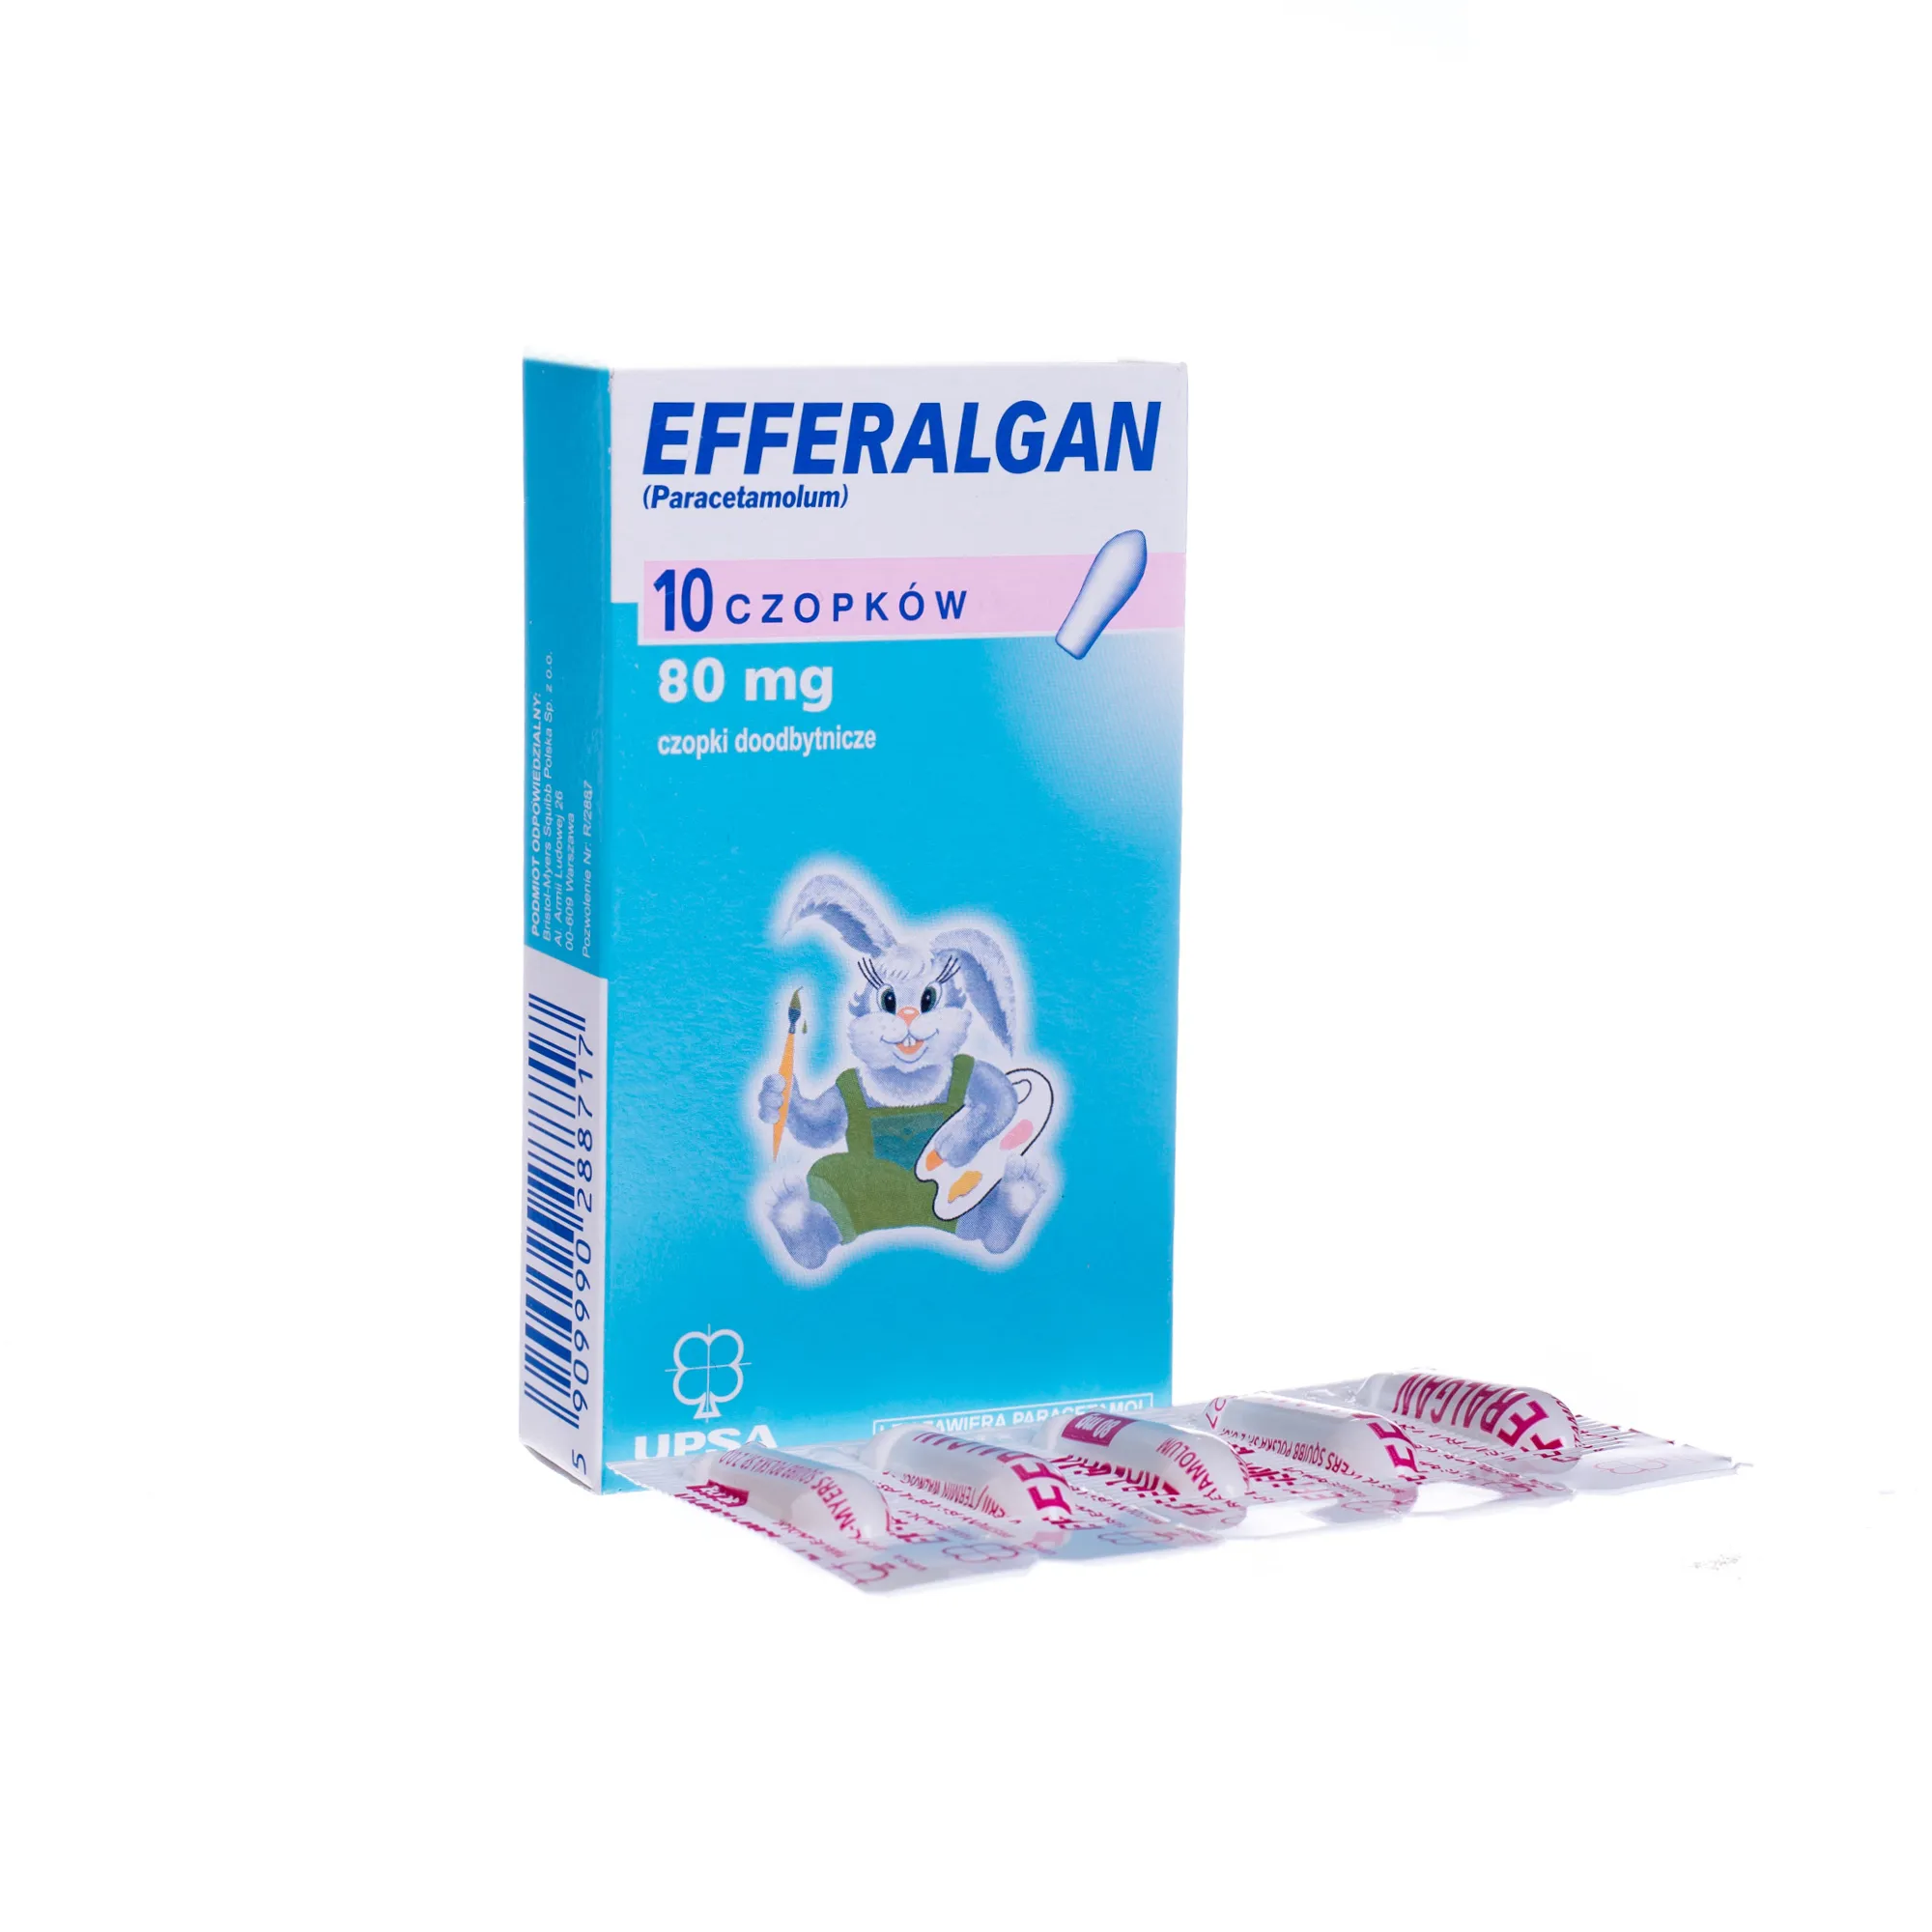 Efferalgan 80 mg Paracetamolum , 10 czopków doodbytniczych